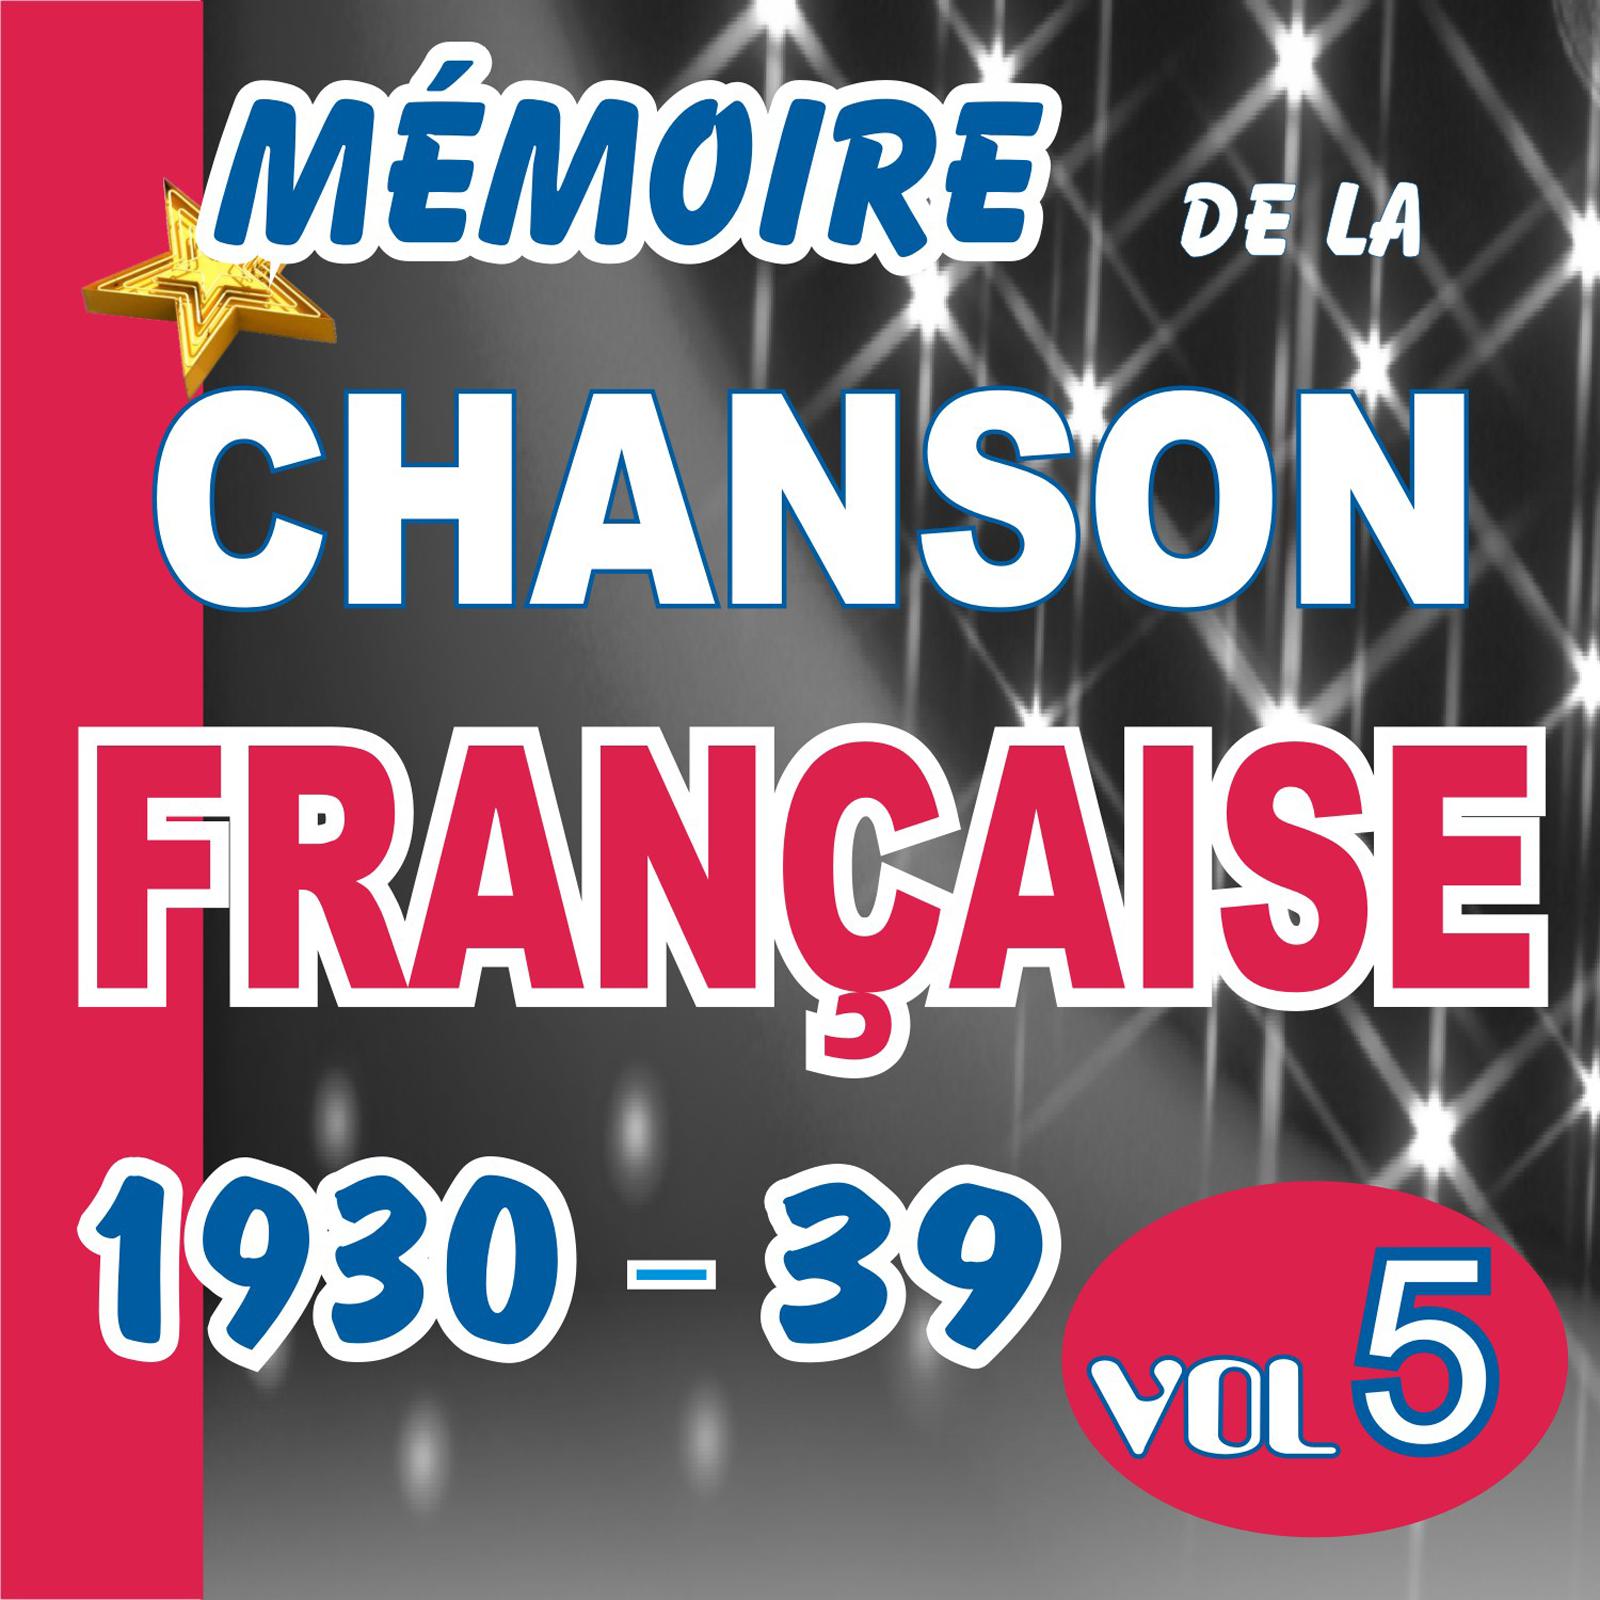 MEMOIRE DE LA CHANSON FRANCAISE DE 1930 A 1939 - VOL 5